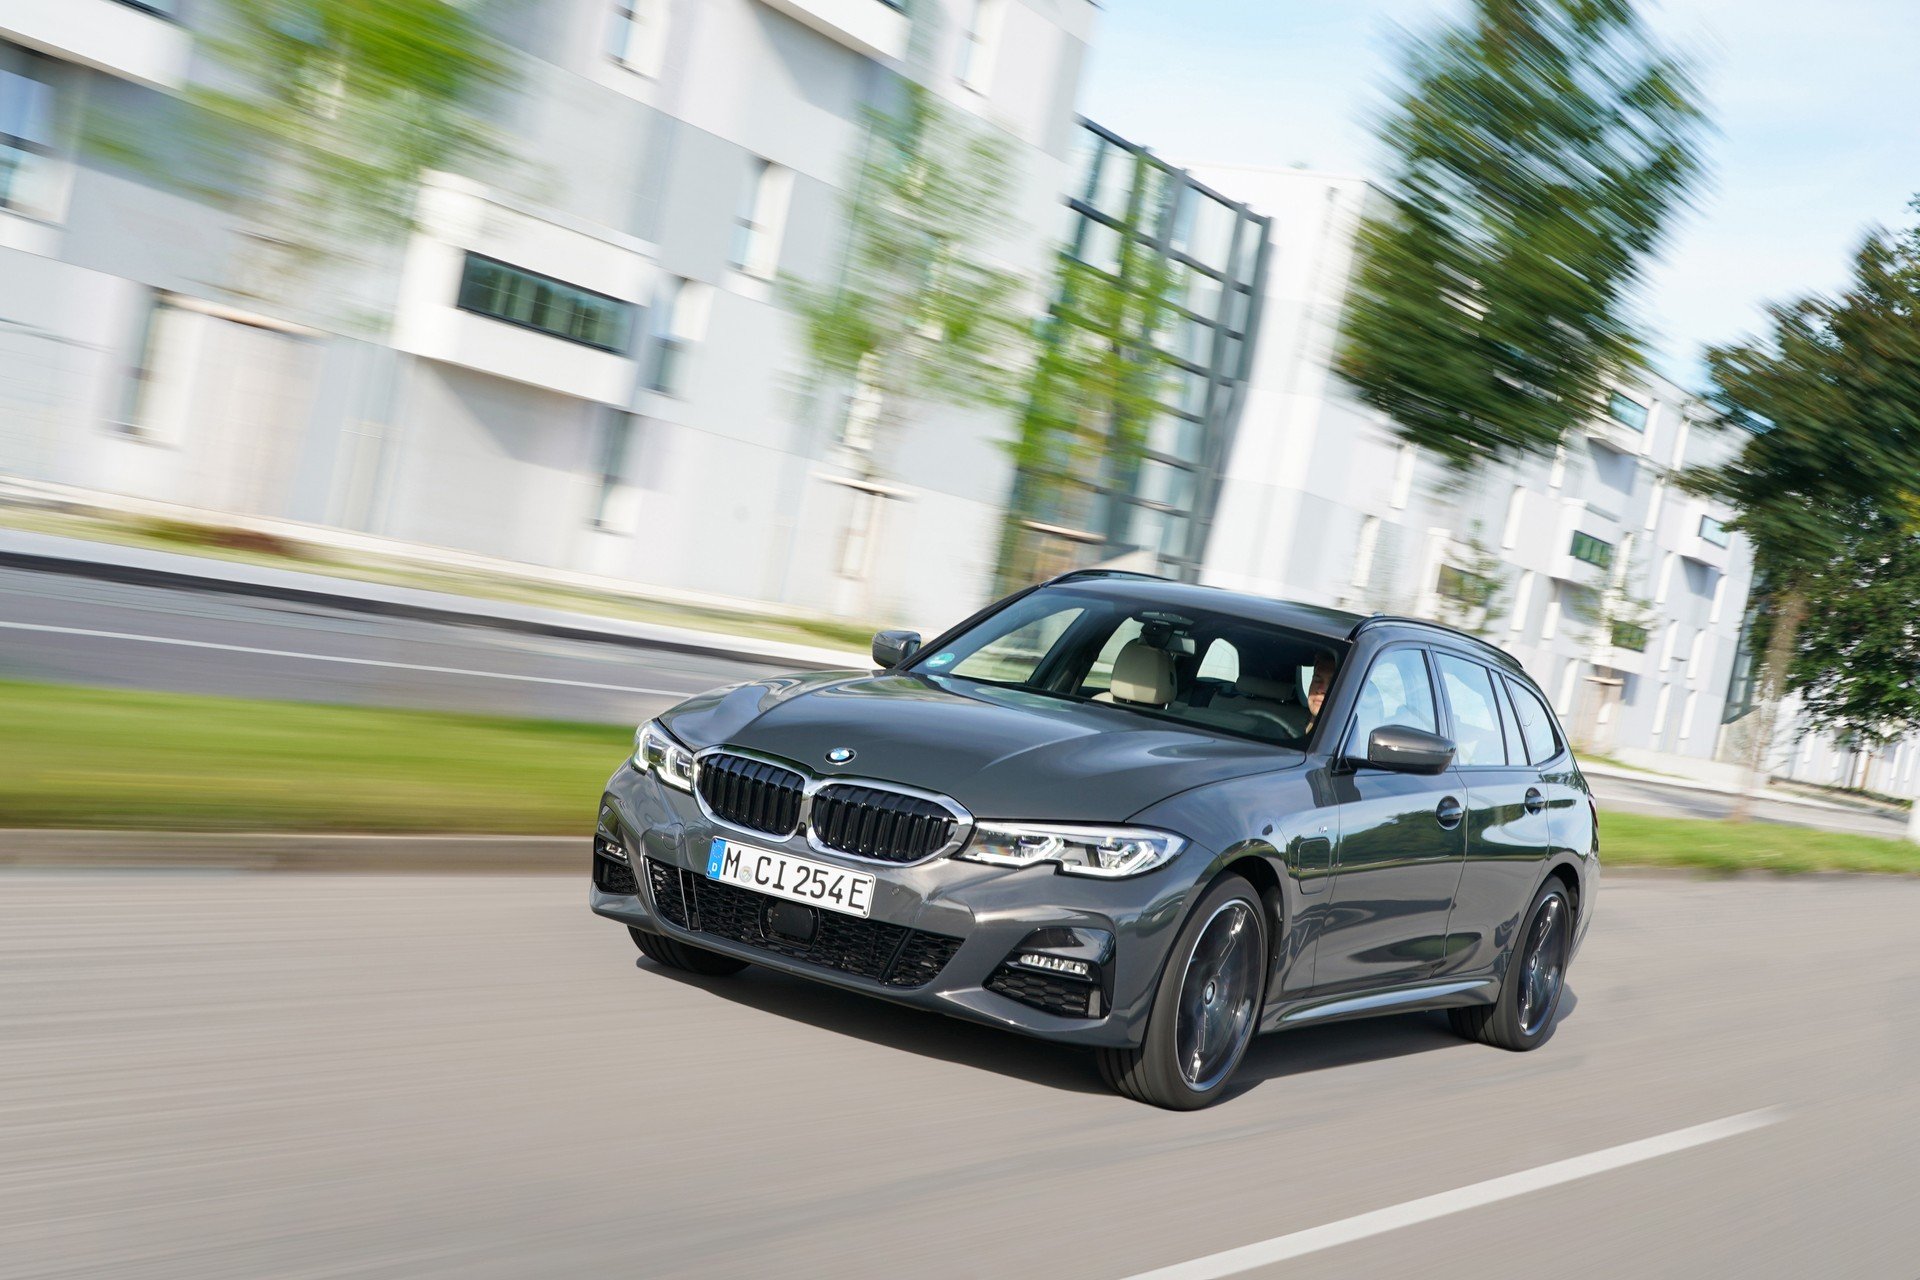 BMW 320e e BMW 520e, nuovi modelli Plug-in: caratteristiche e prezzi 